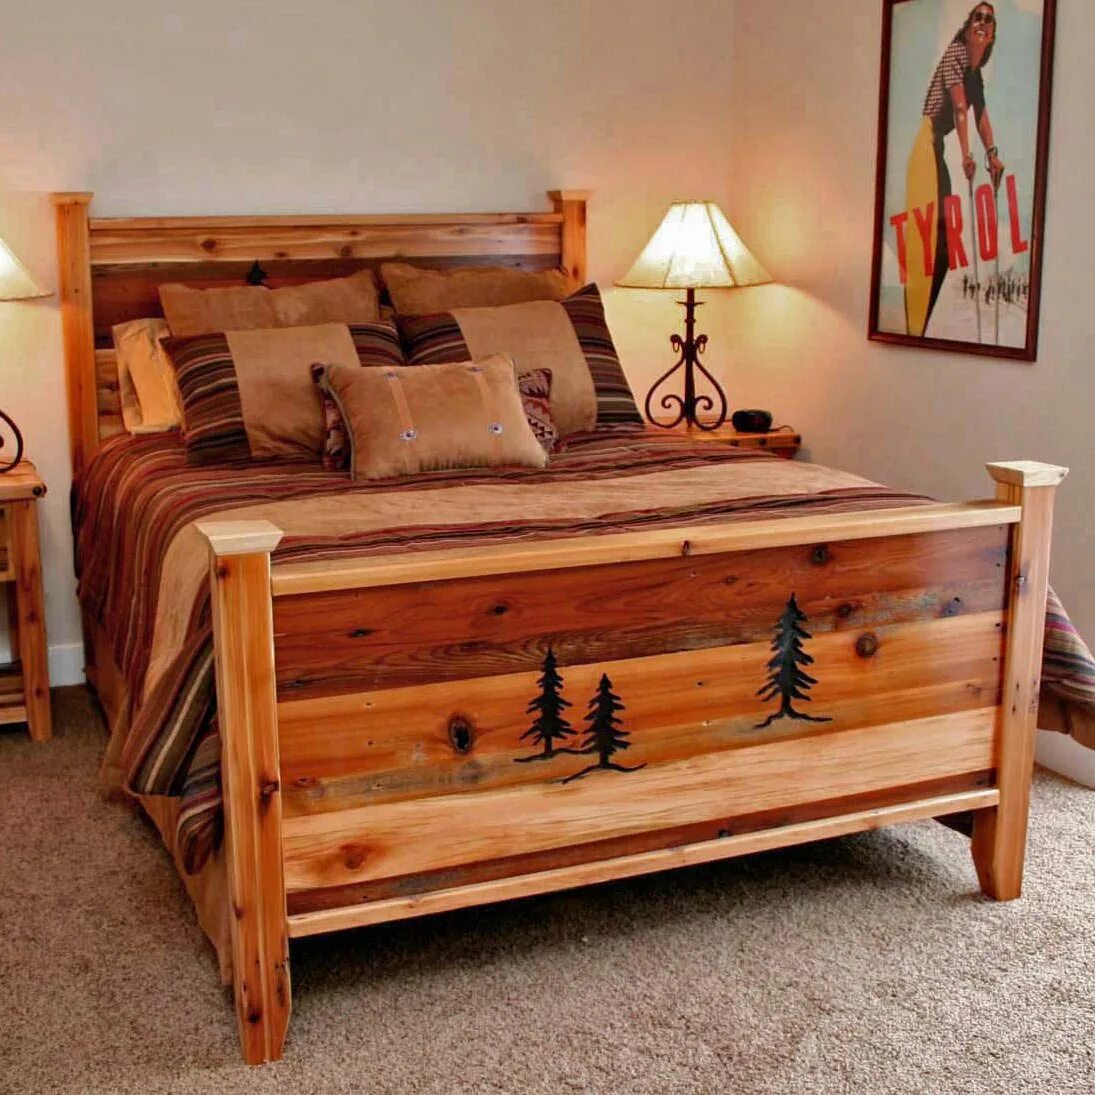 Wooden мебель. Кровать подростковая «Wooden Bed-2». Спальня рустикальный стиль деревянная мебель. Кровать в деревенском стиле.